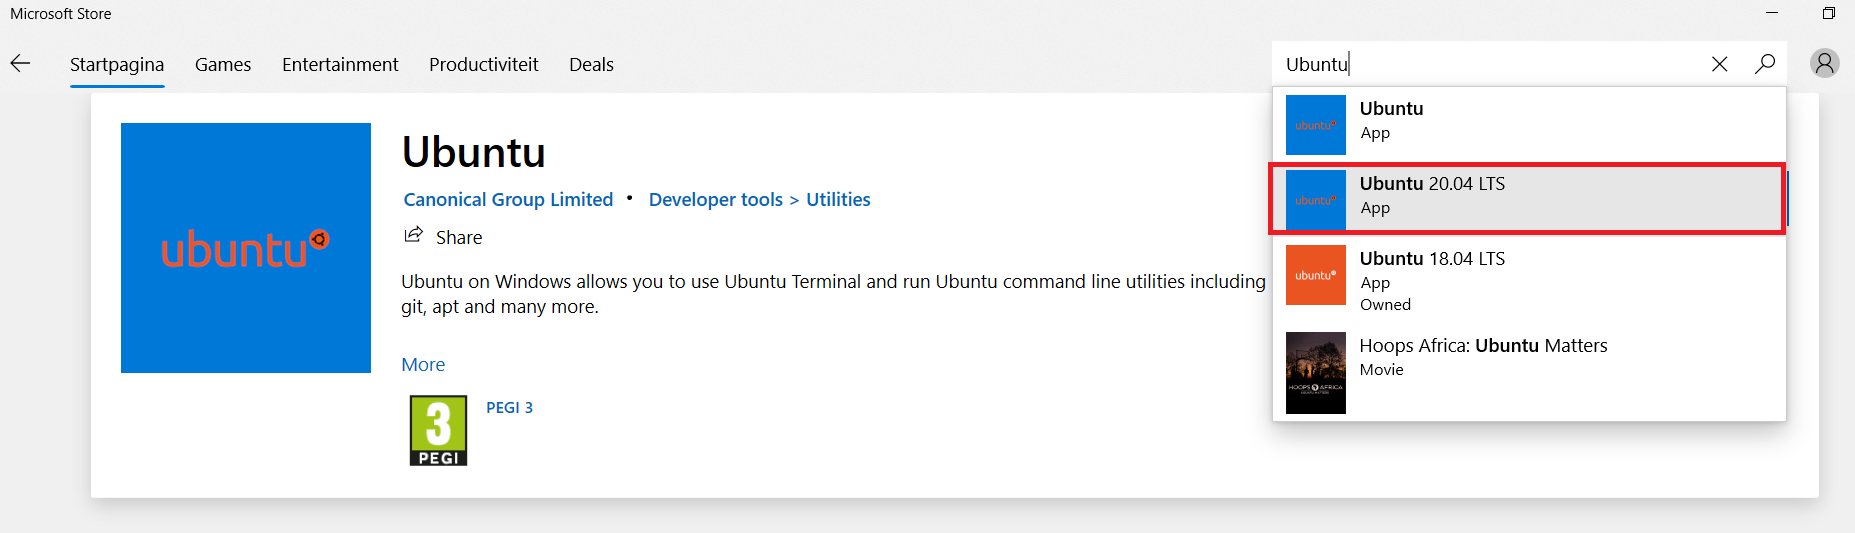 Search for Ubuntu